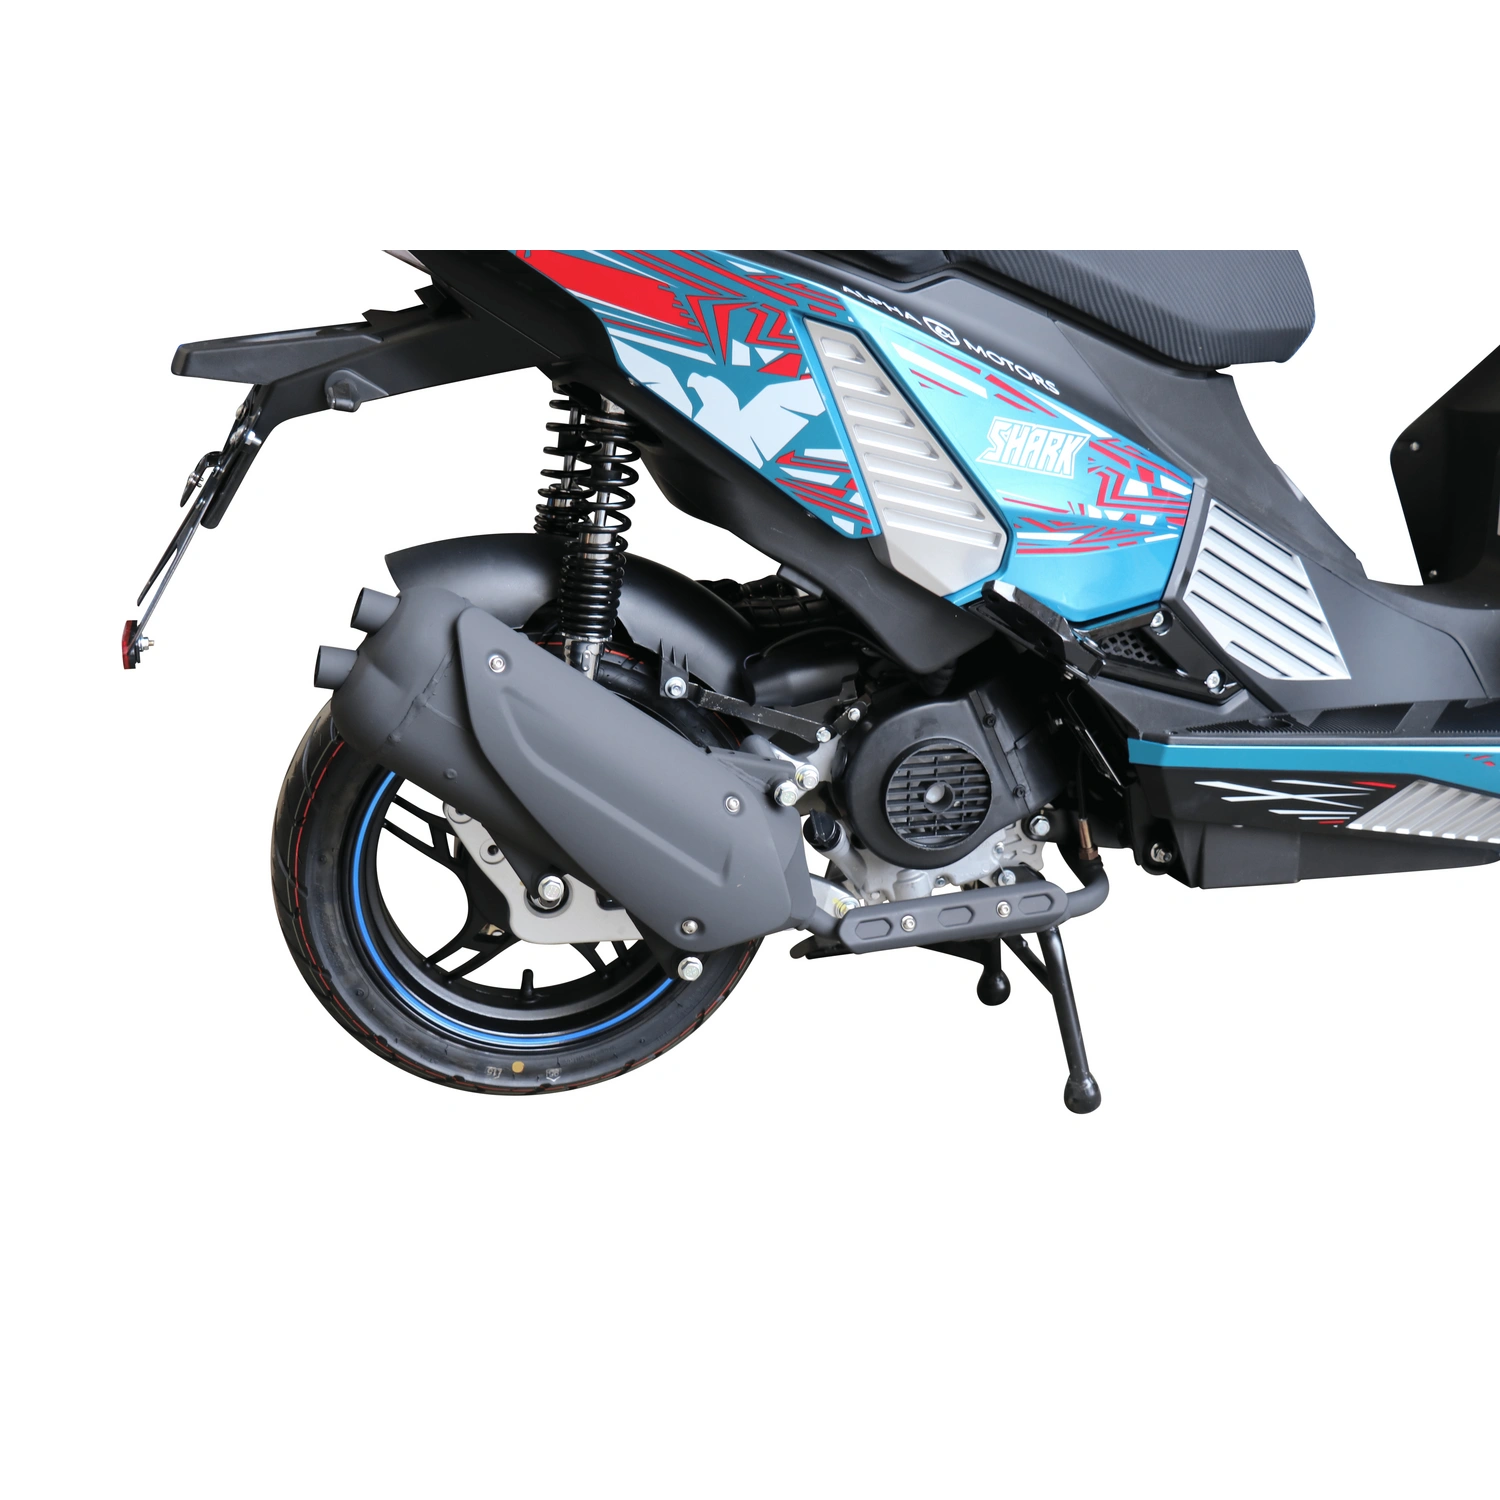 ALPHA MOTORS Motorroller »Shark«, 50 cm³, 45km/h, Euro 5